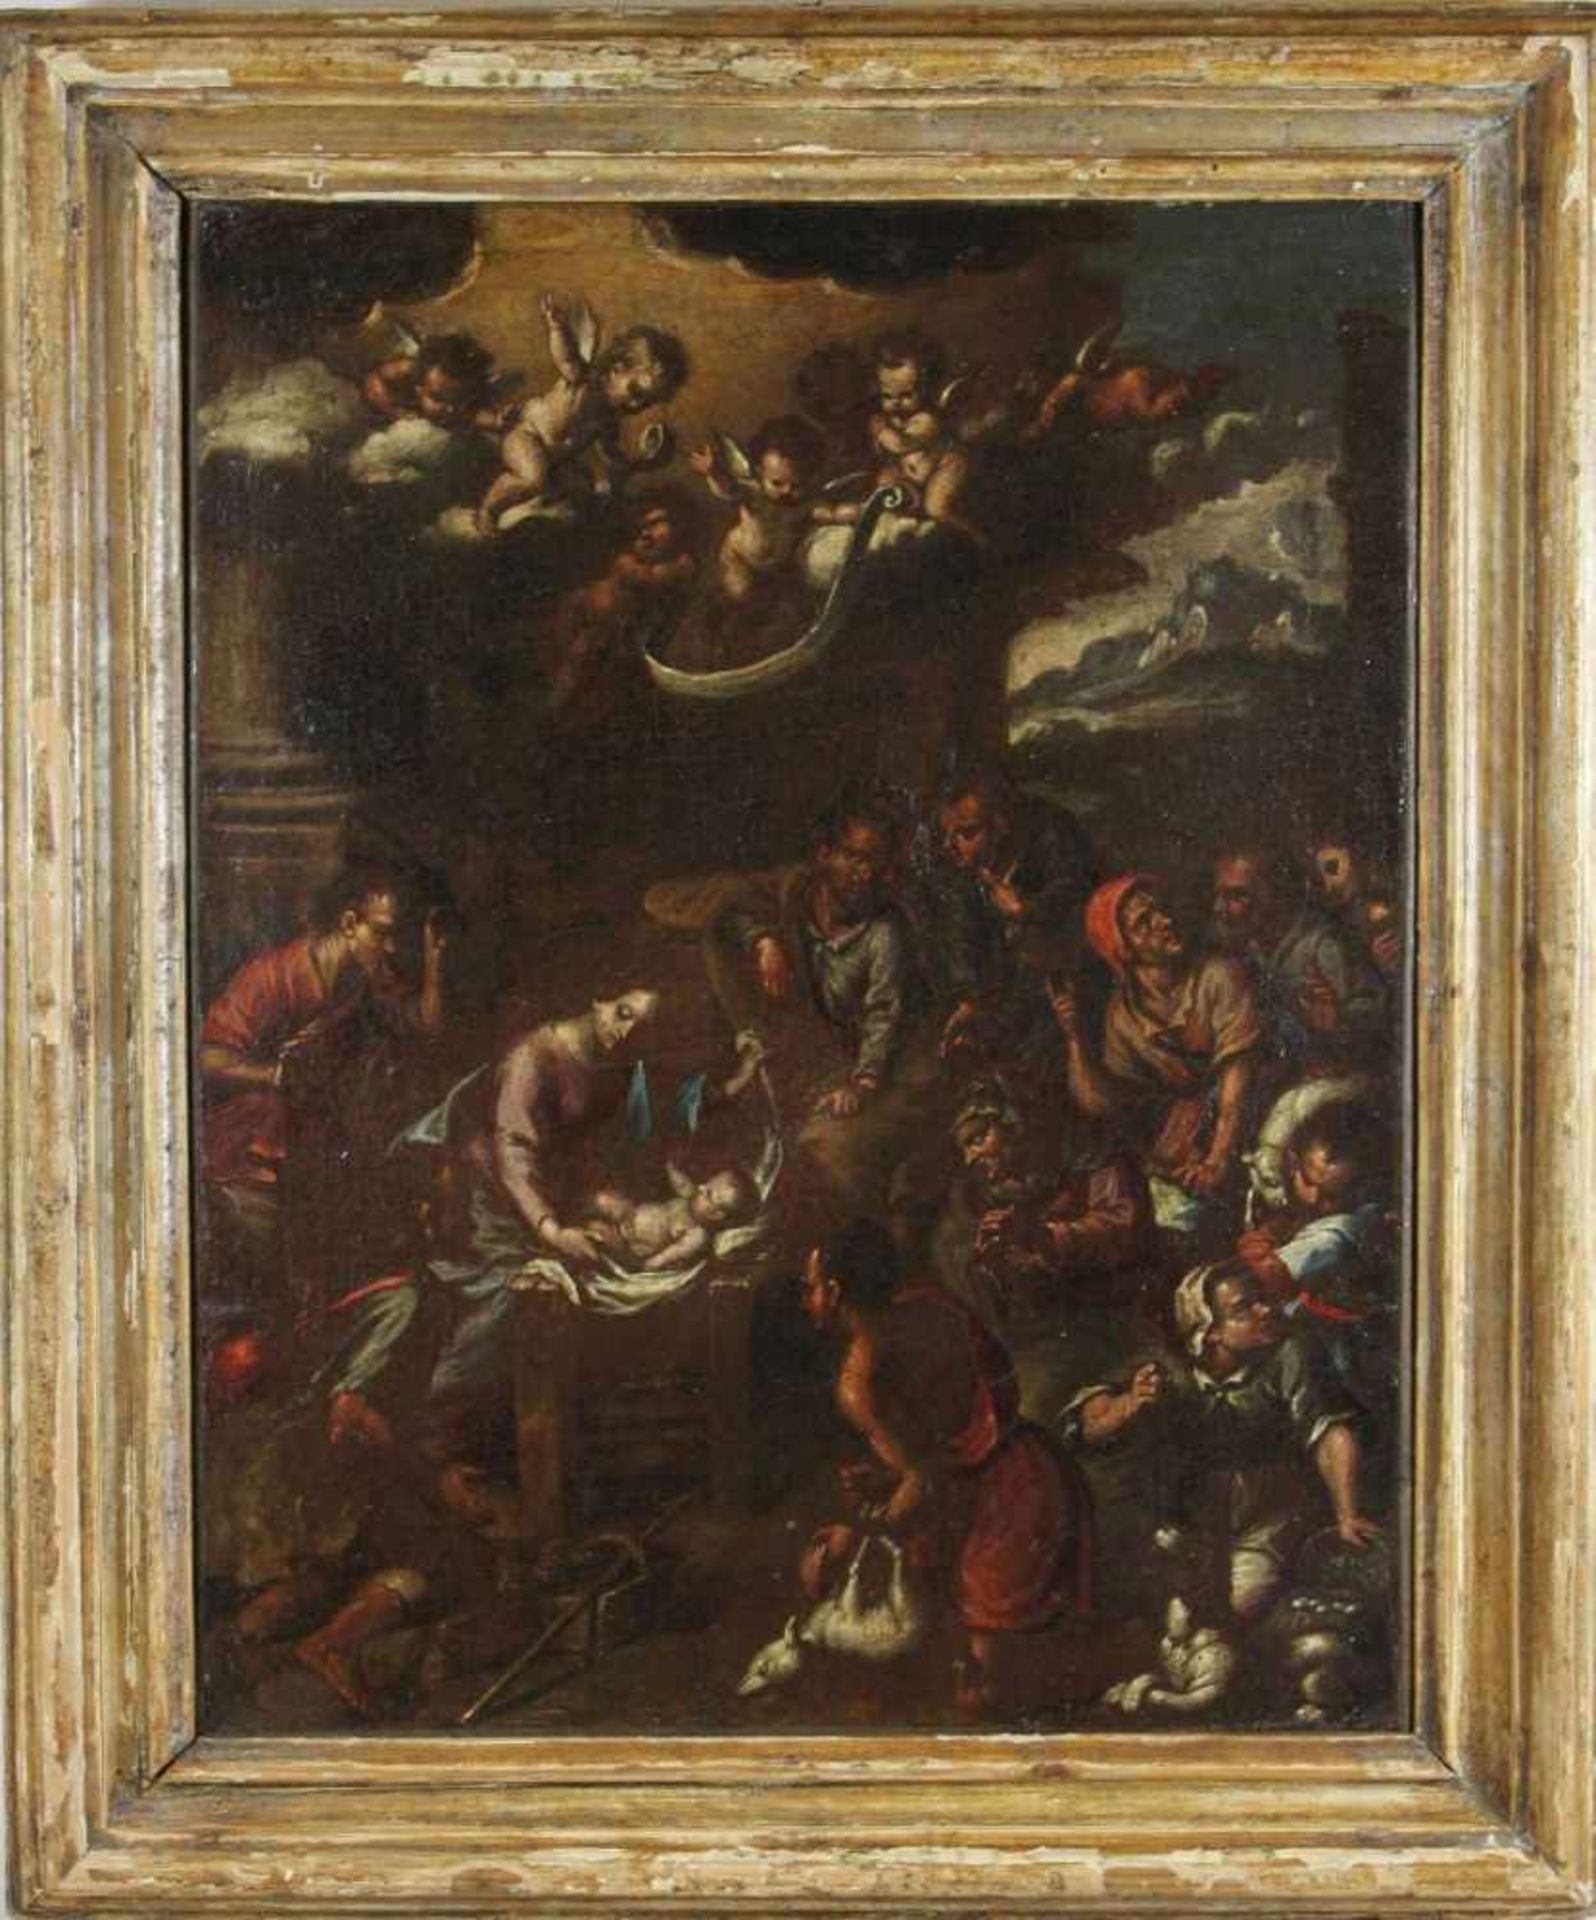 Anonymer italienischer Maler, Geburt Christi, wohl Venezianische Schule, 17./18. Jh., Öl auf Lwd., - Bild 2 aus 2